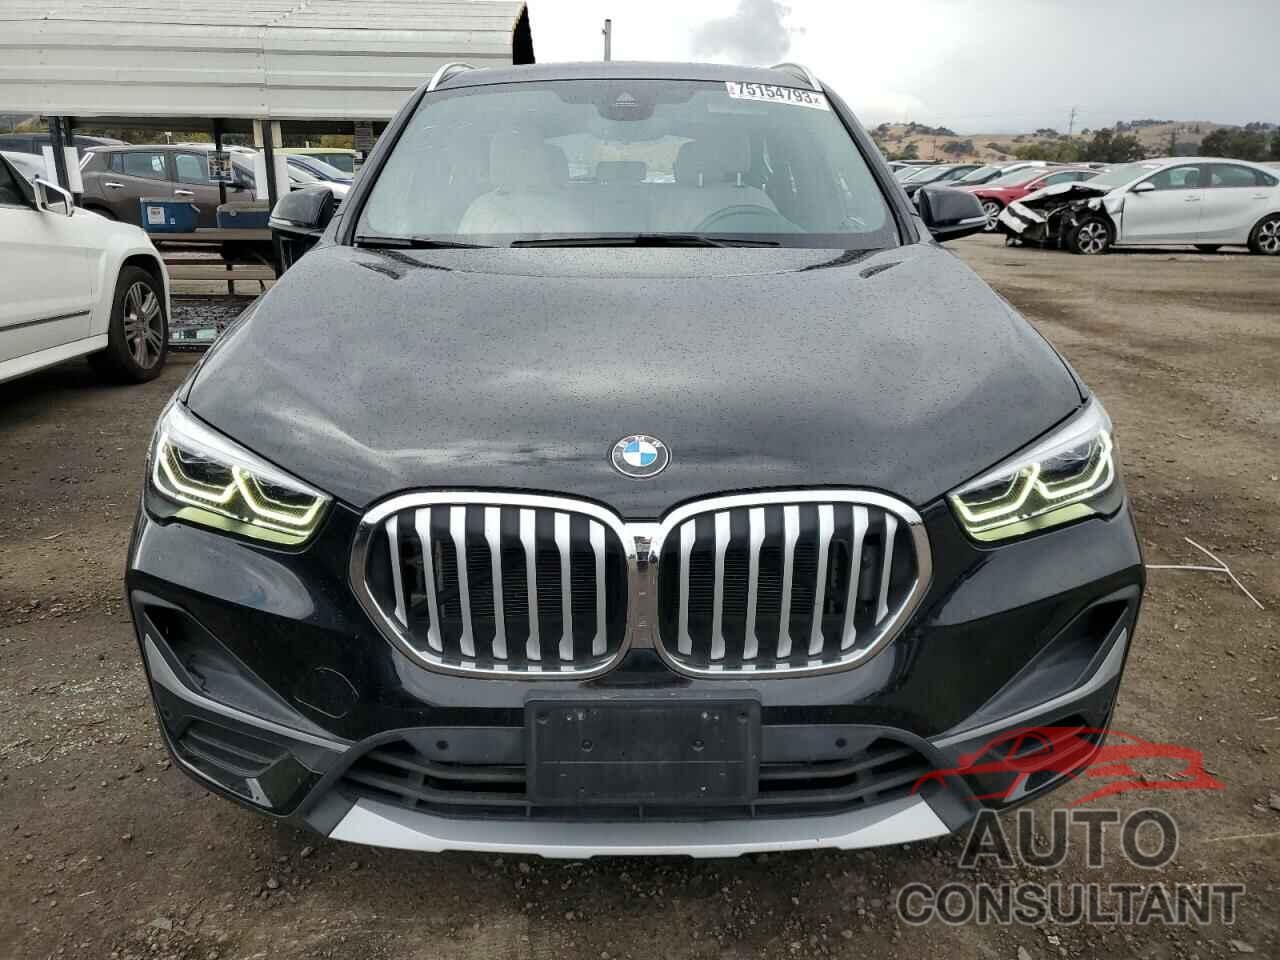 BMW X1 2021 - WBXJG9C06M5S34462